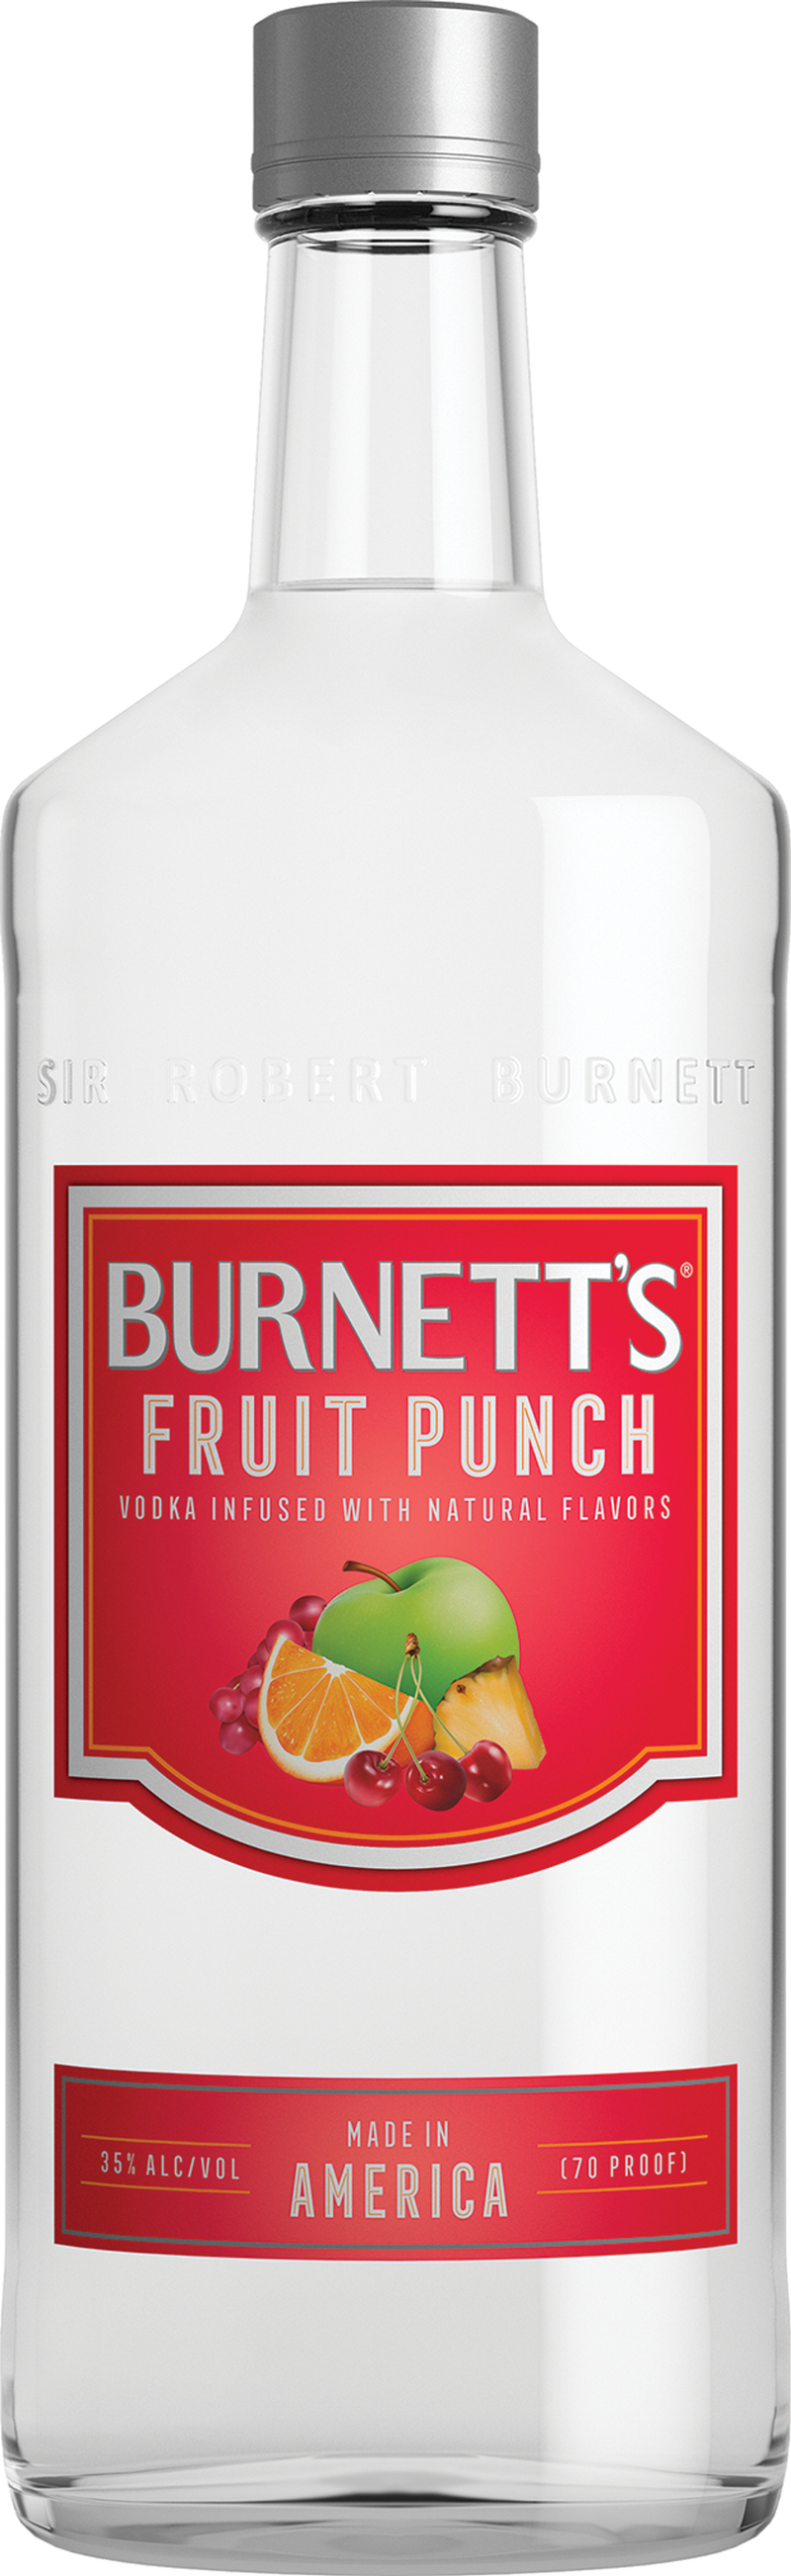 BURNETT'S FRUIT PUNCH